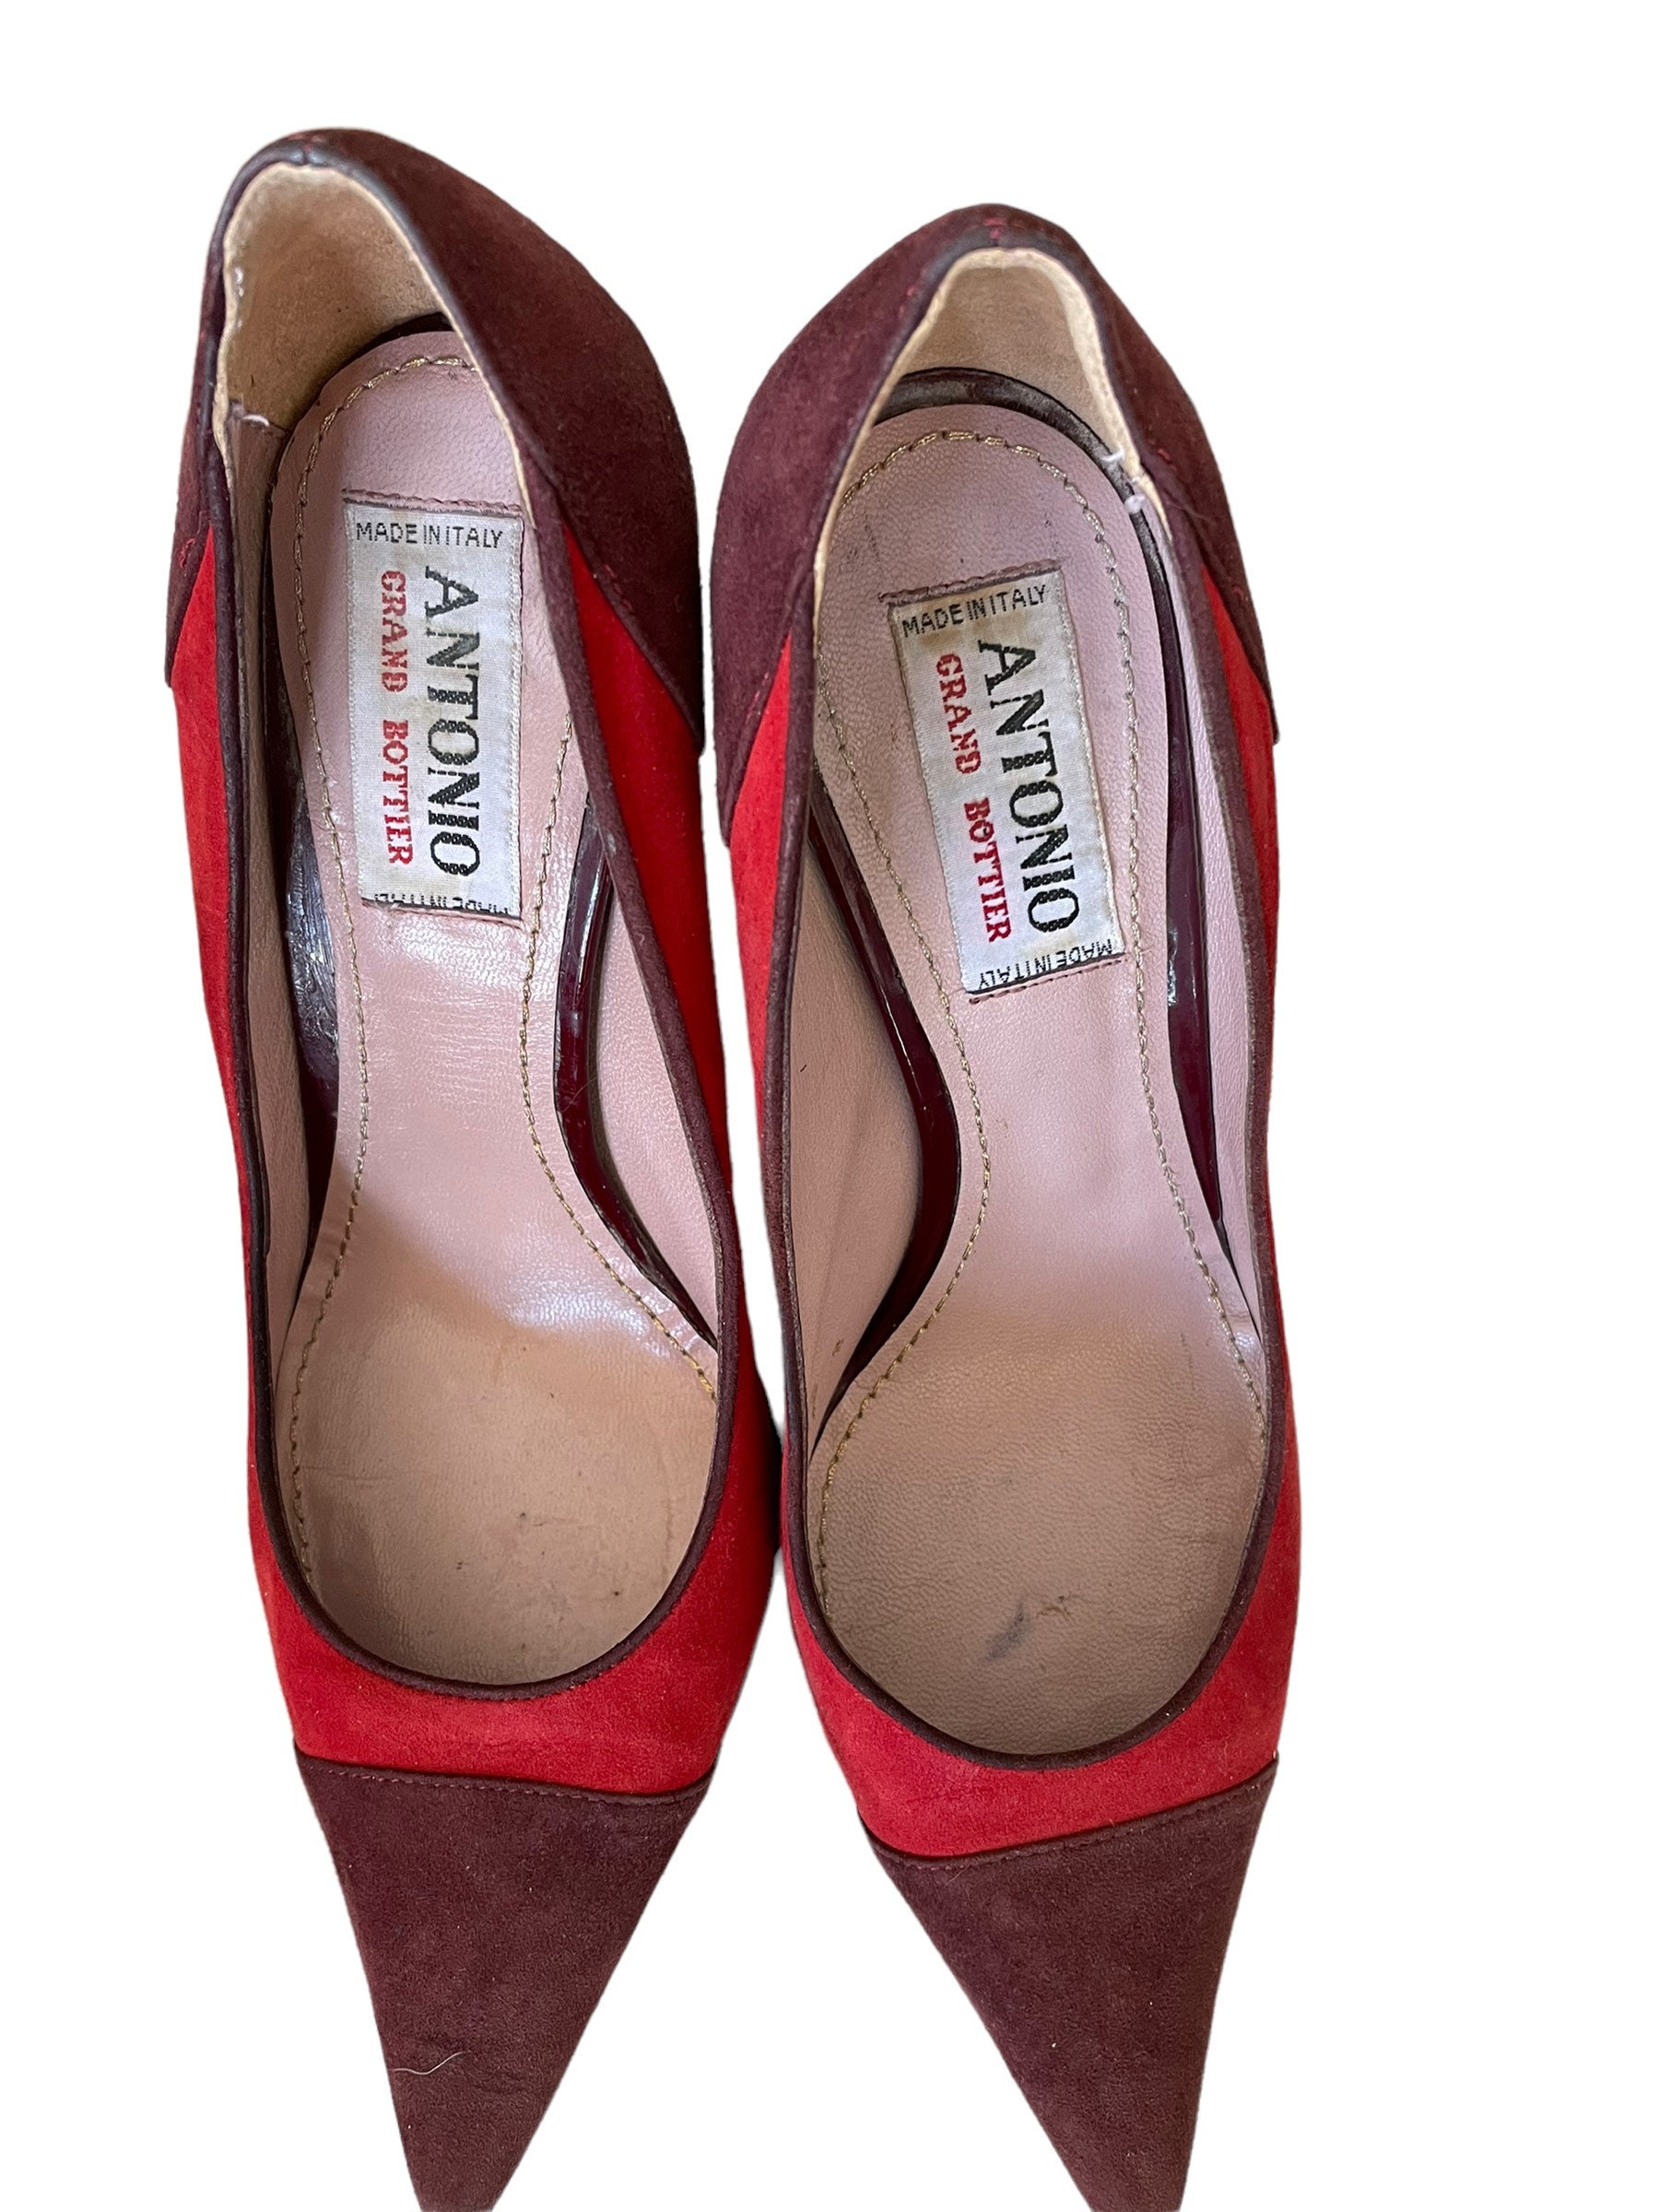 Antonio Grand Bottier Heels , Suede Burgundy Color Block Heels , Size ...